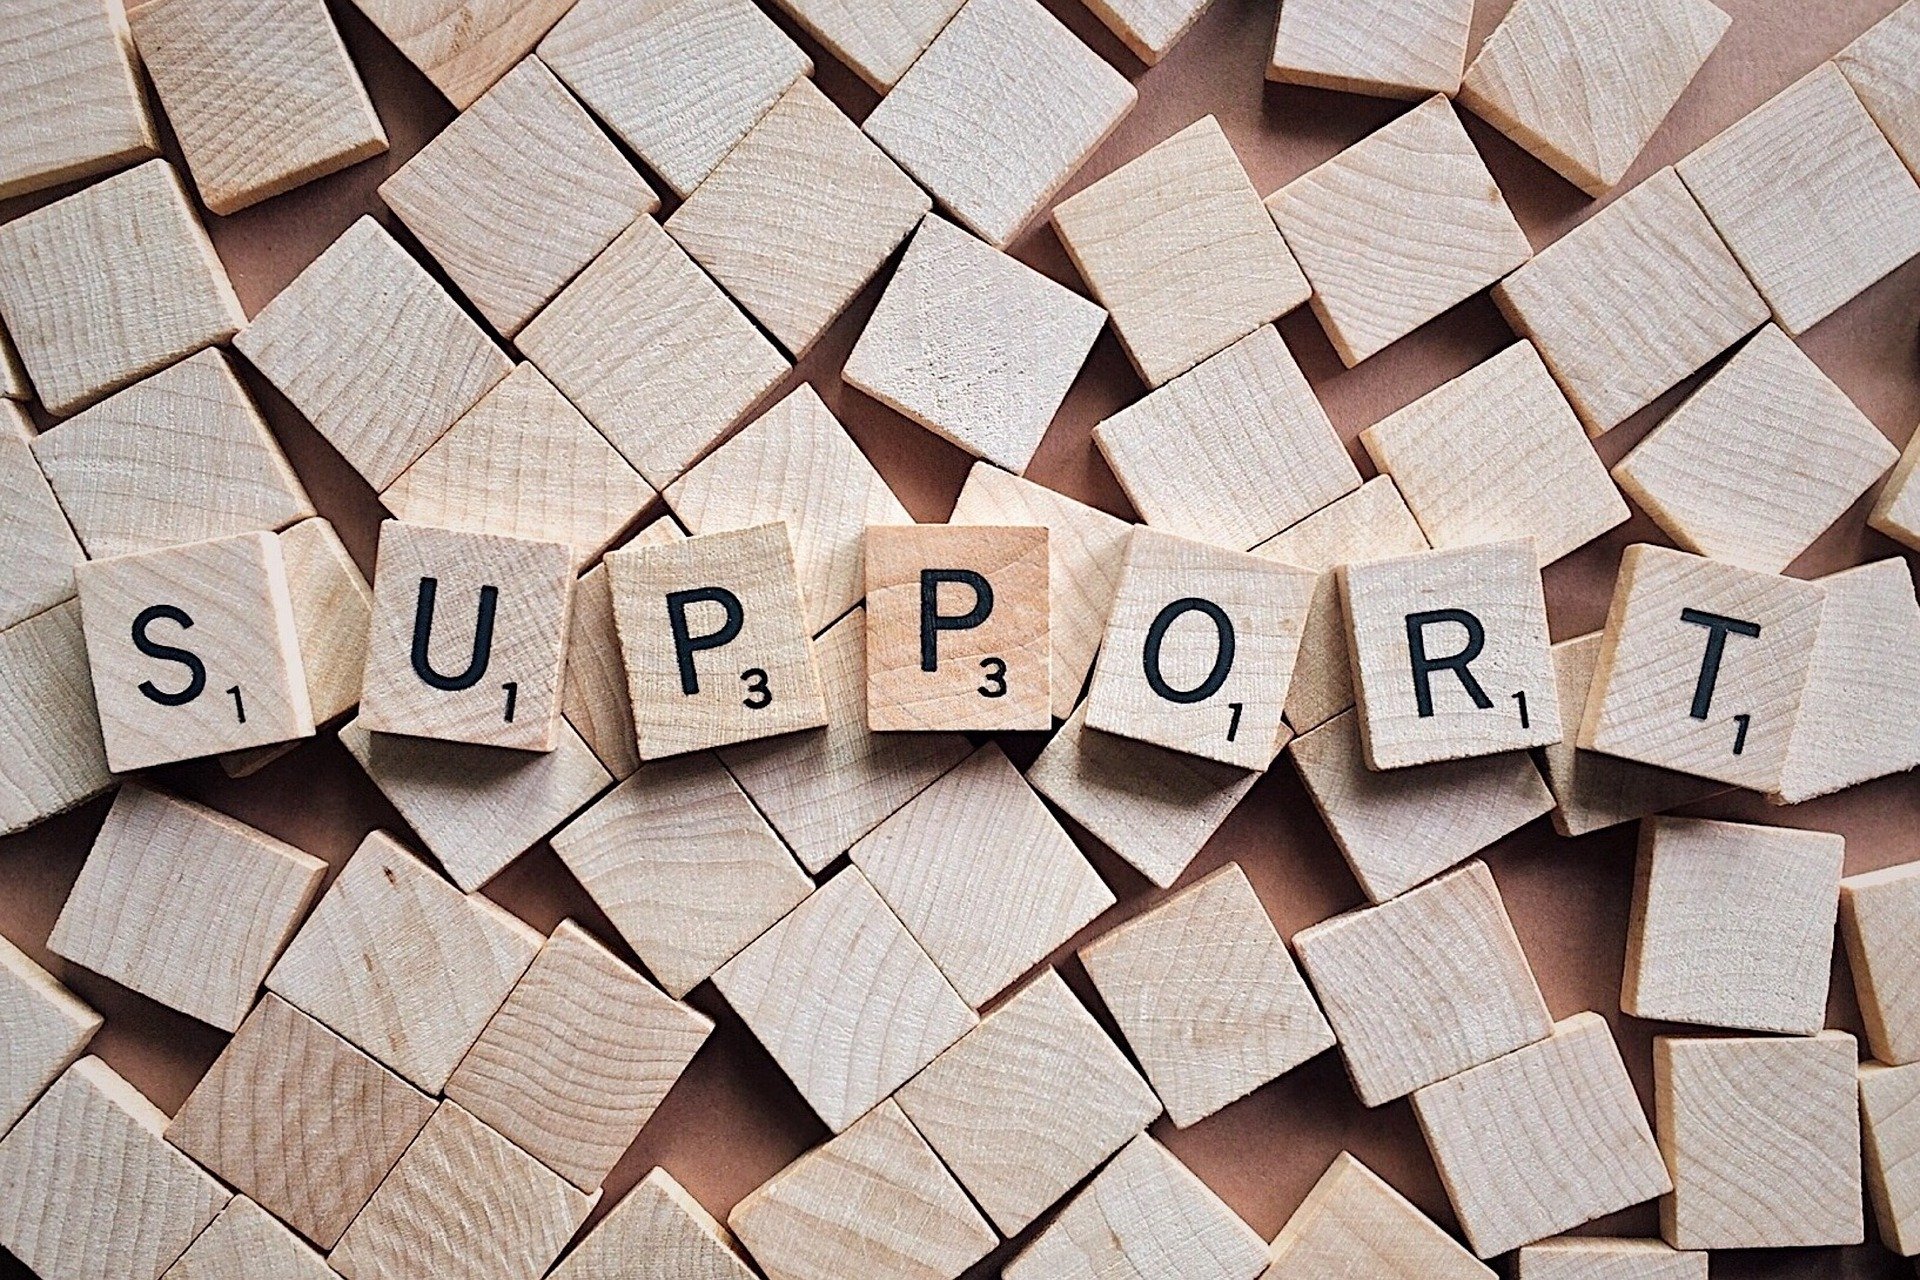 Das Wort "Support" mit Scabbelbuchstaben geschrieben